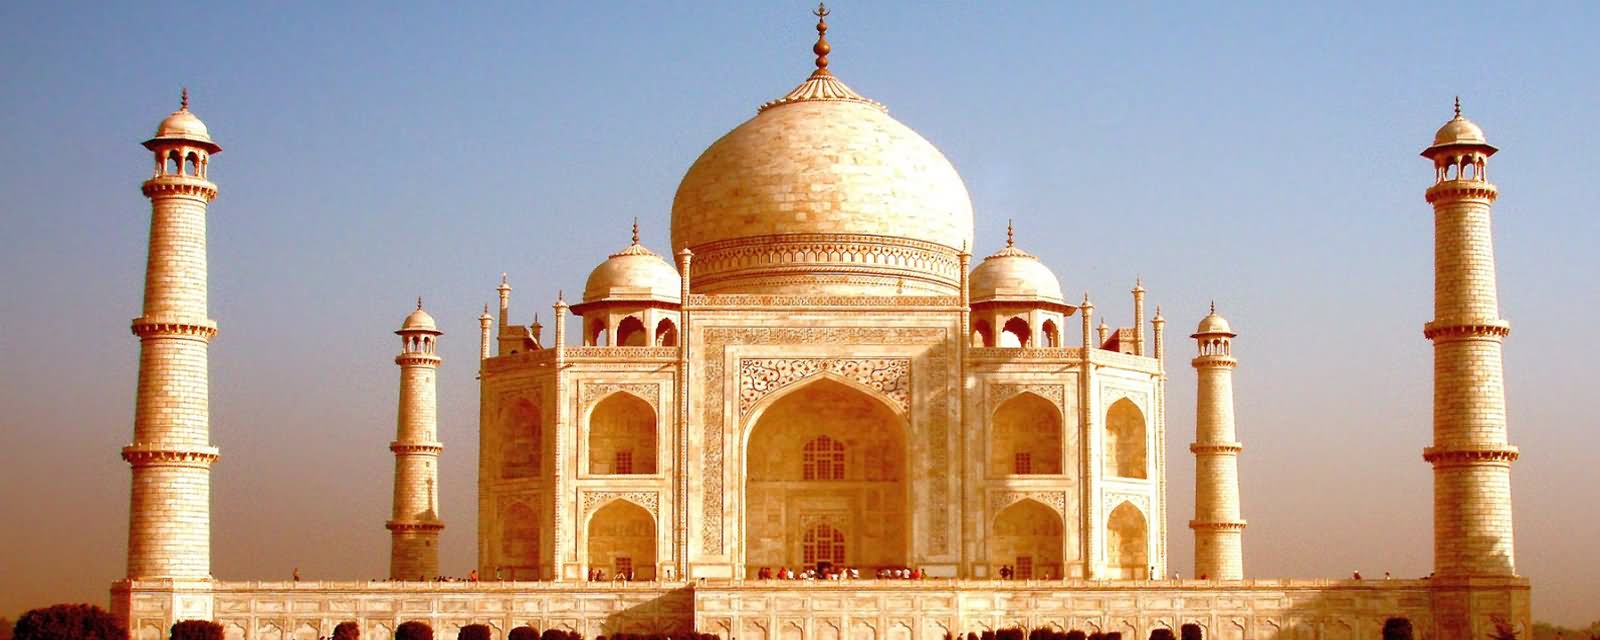 Panorama View Of Taj Mahal